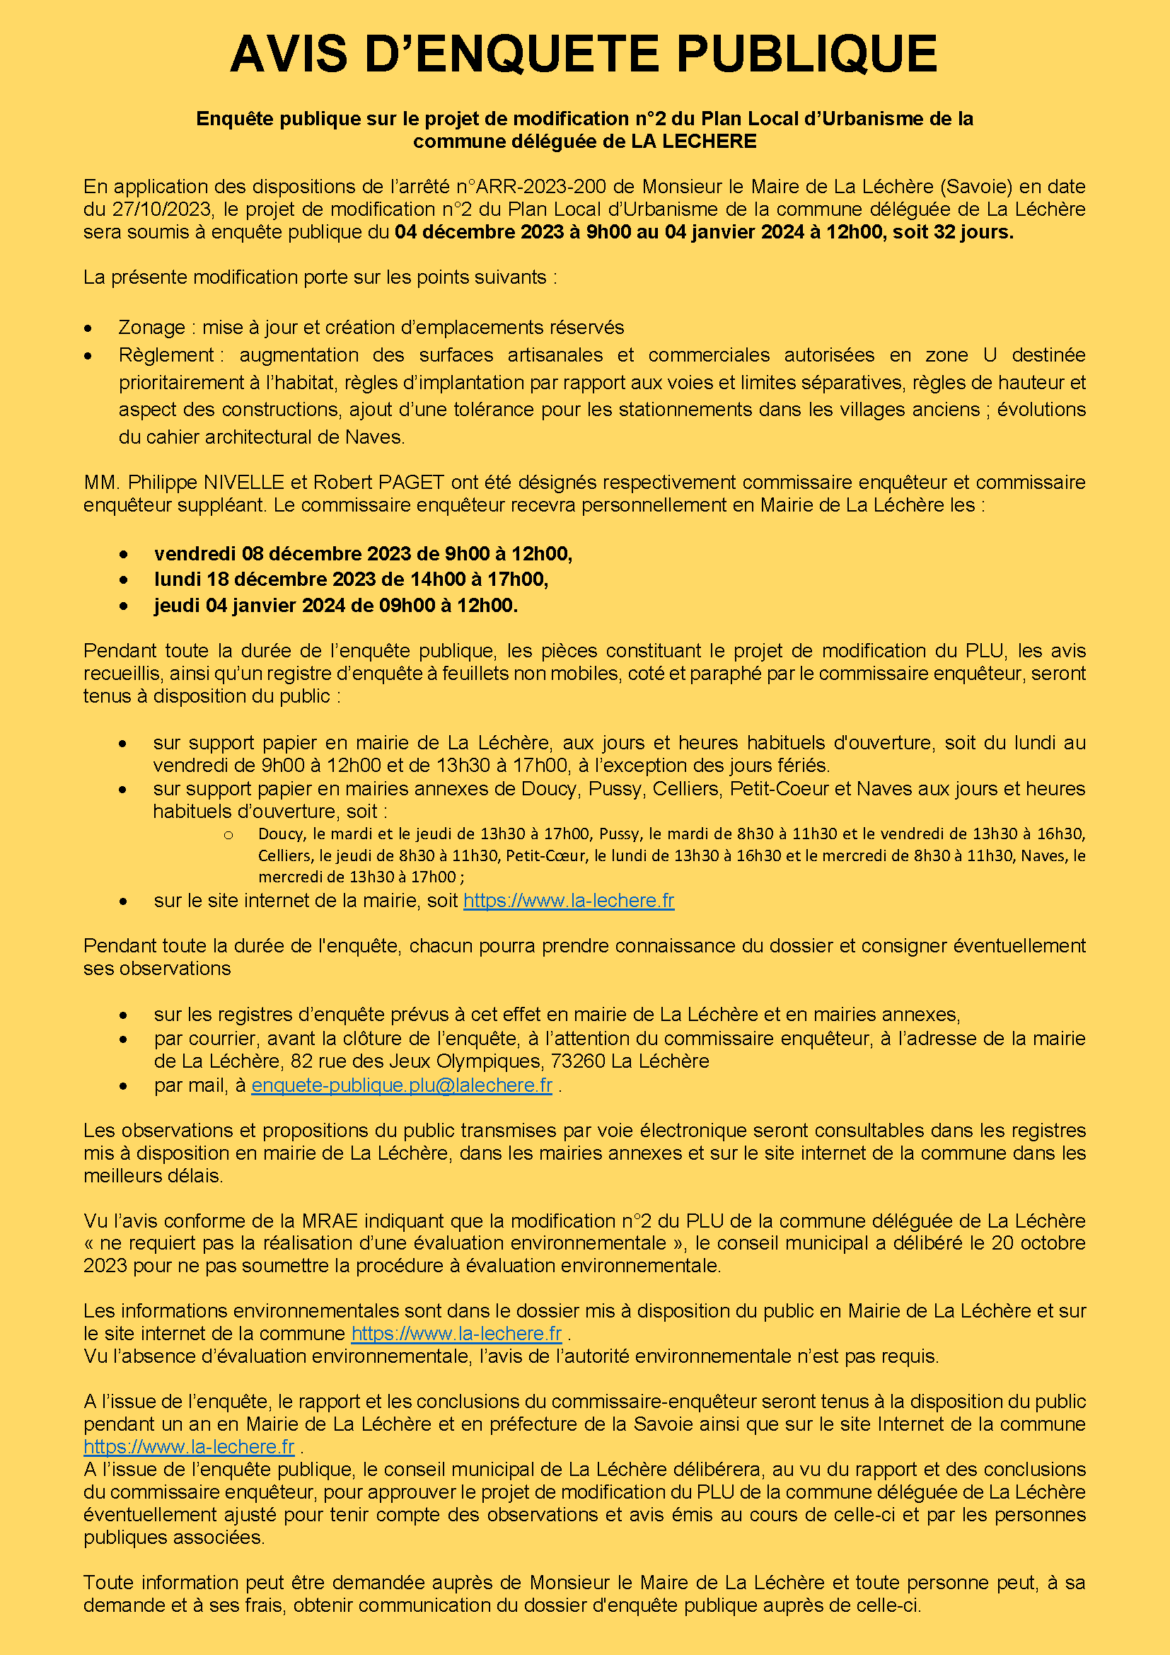 Avis d’enquête public – Modification n°2 du PLU de La Léchère (commune déléguée)